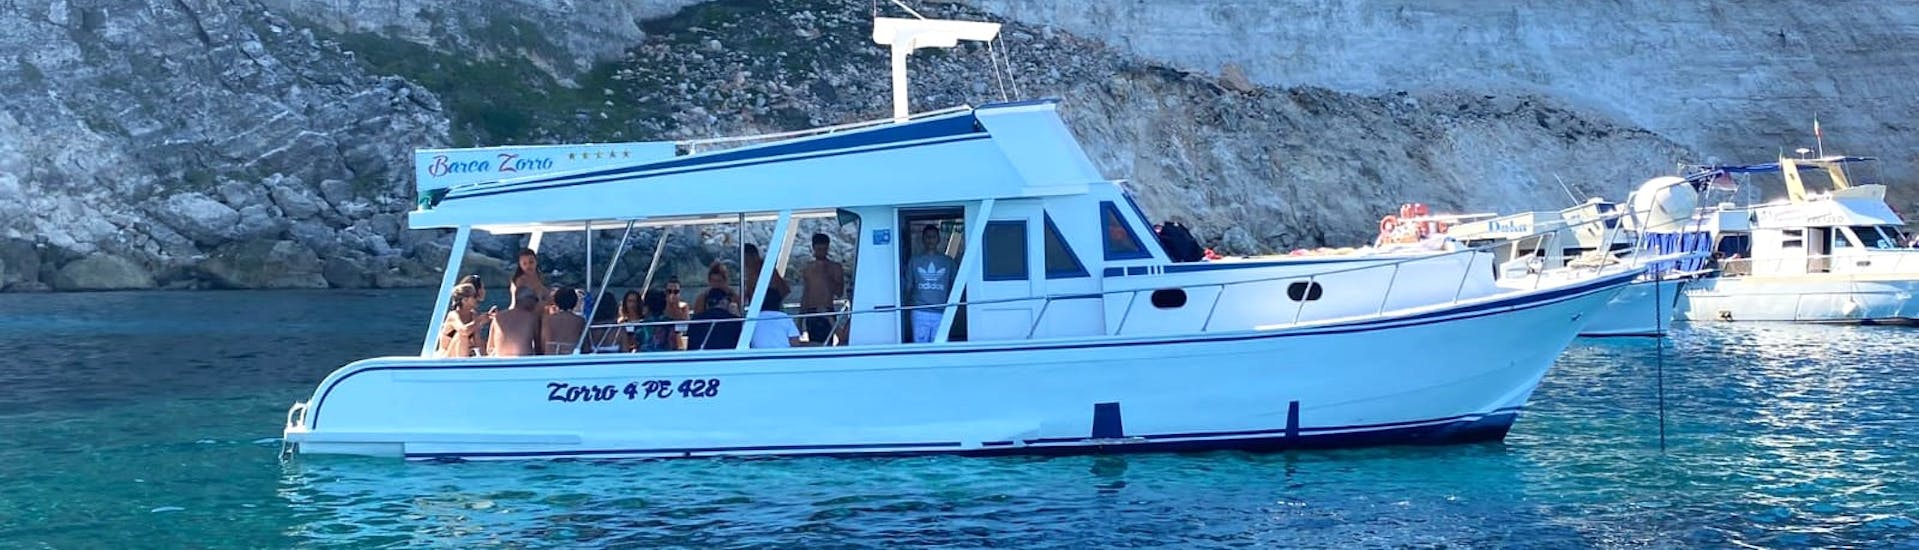 Foto del barco de Gita en Barca Zorro Lampedusa en el mar durante el paseo en barco al atardecer alrededor de Lampedusa con Aperitivo y Cena.